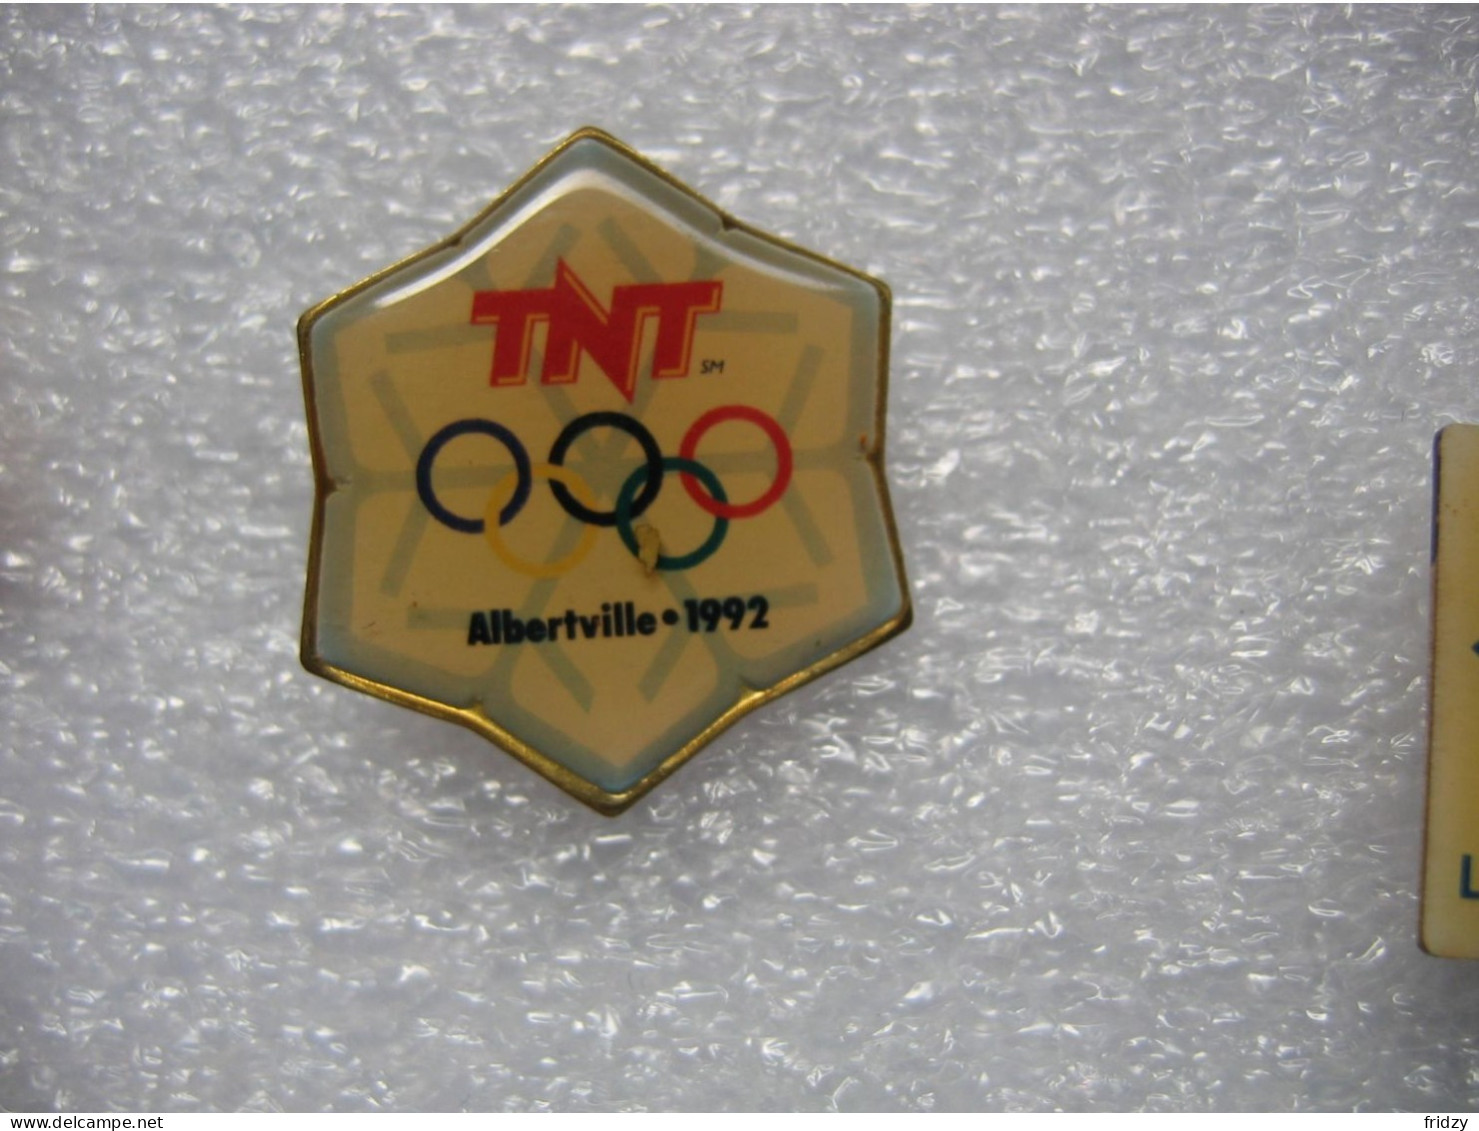 Pin's Des Jeux Olympiques D'ALBERTVILLE En 1992, Sponsorisés Par La TNT - Jeux Olympiques